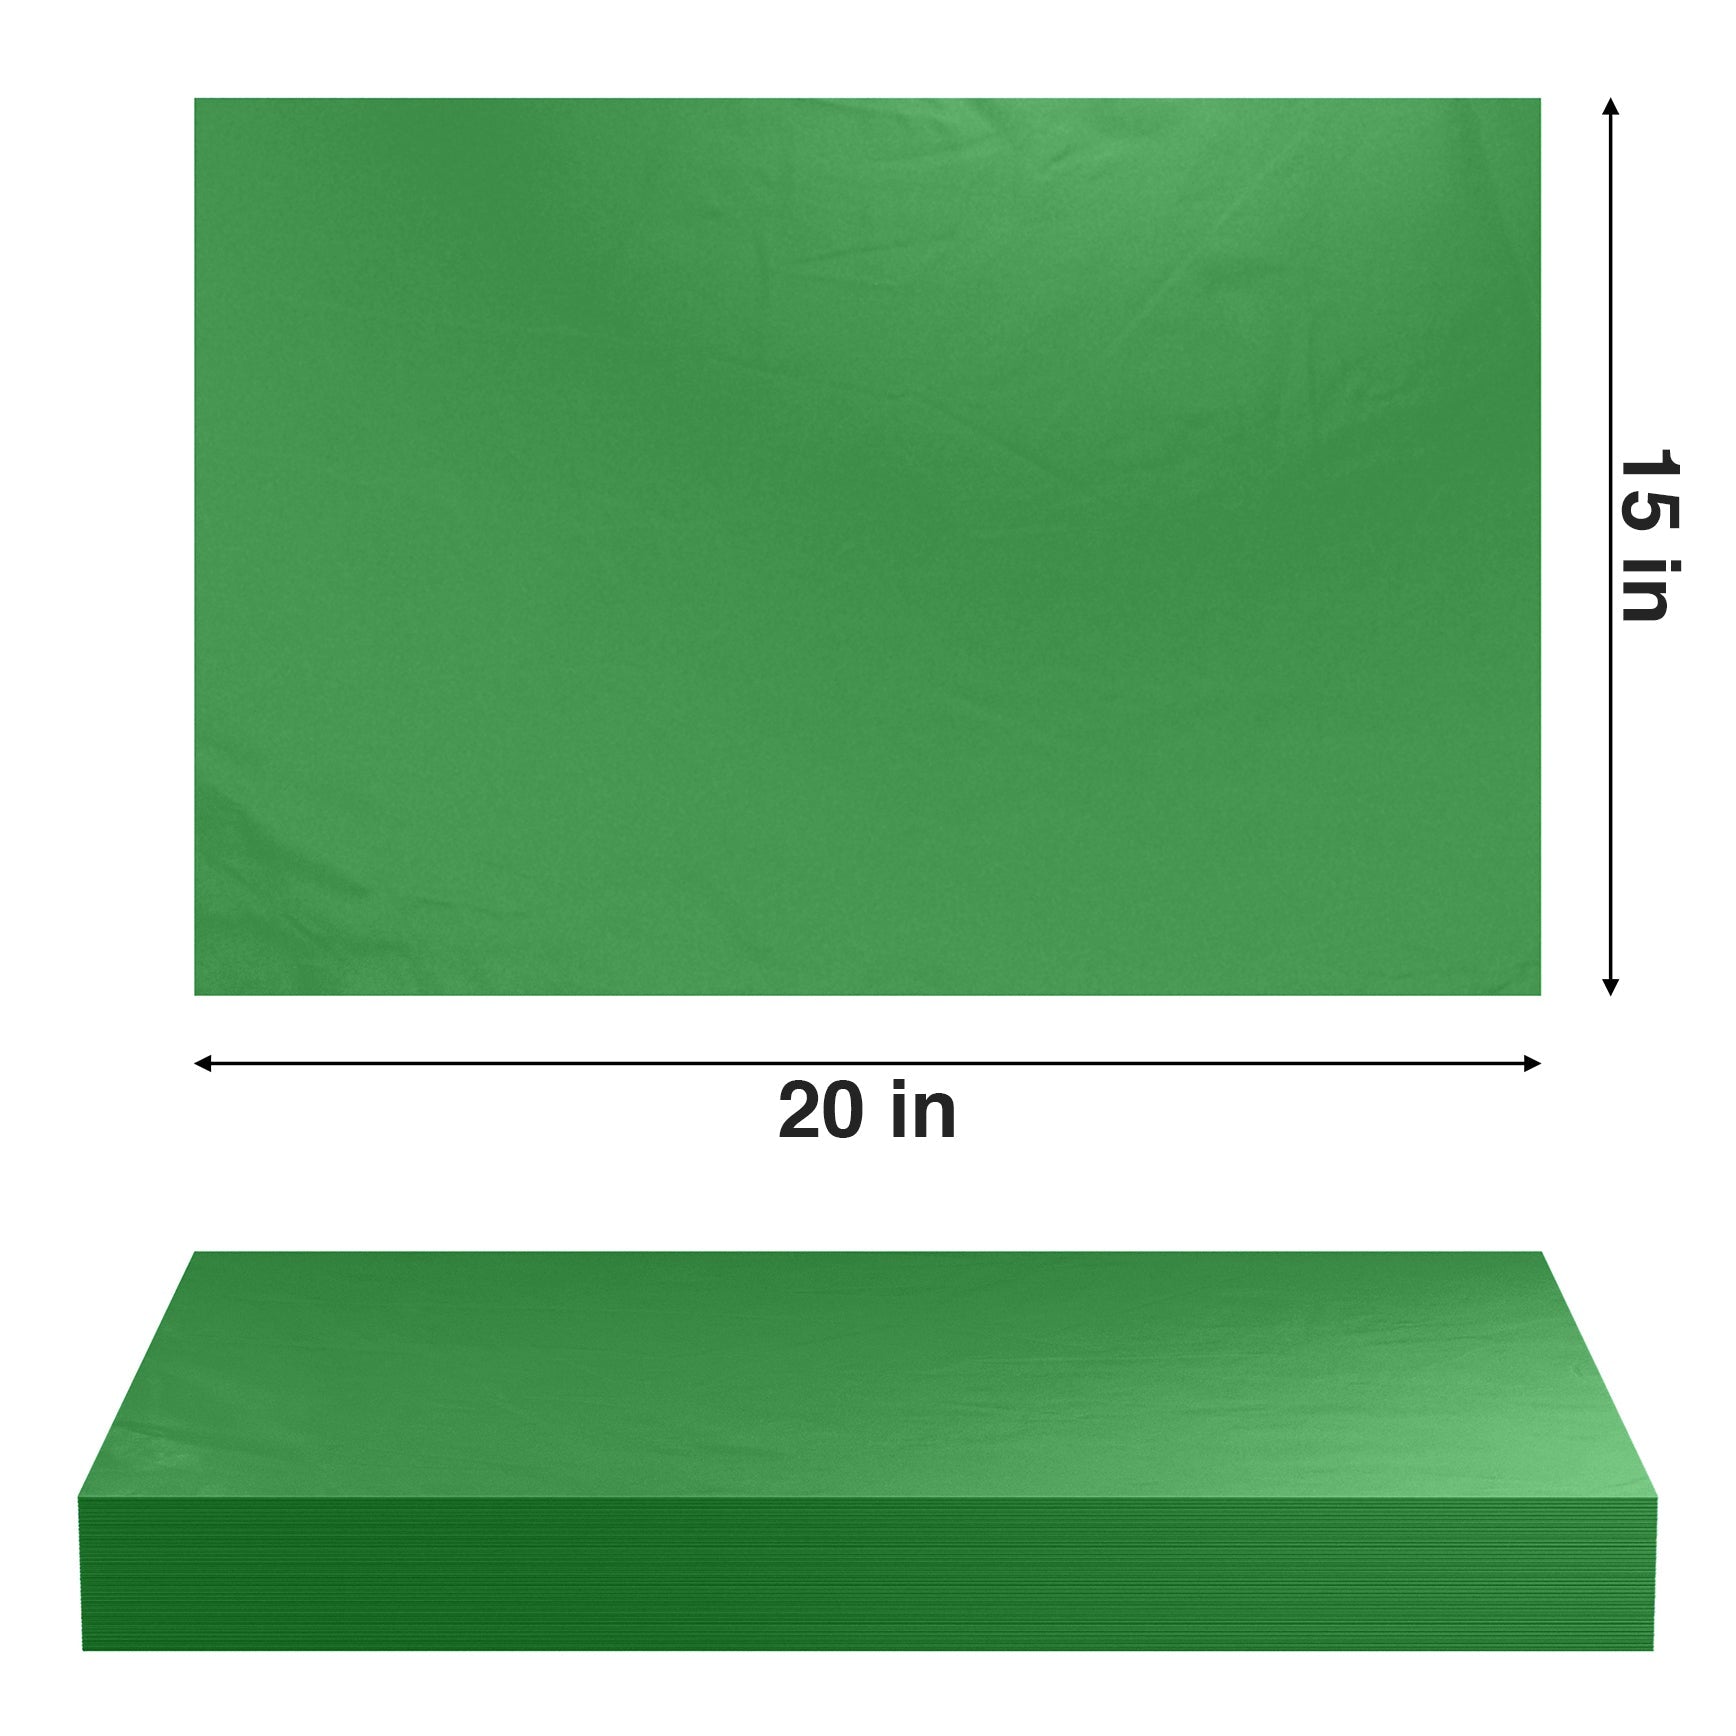 Festive Green Color Tissue Paper, 15x20, Bulk 480 Sheet Pack